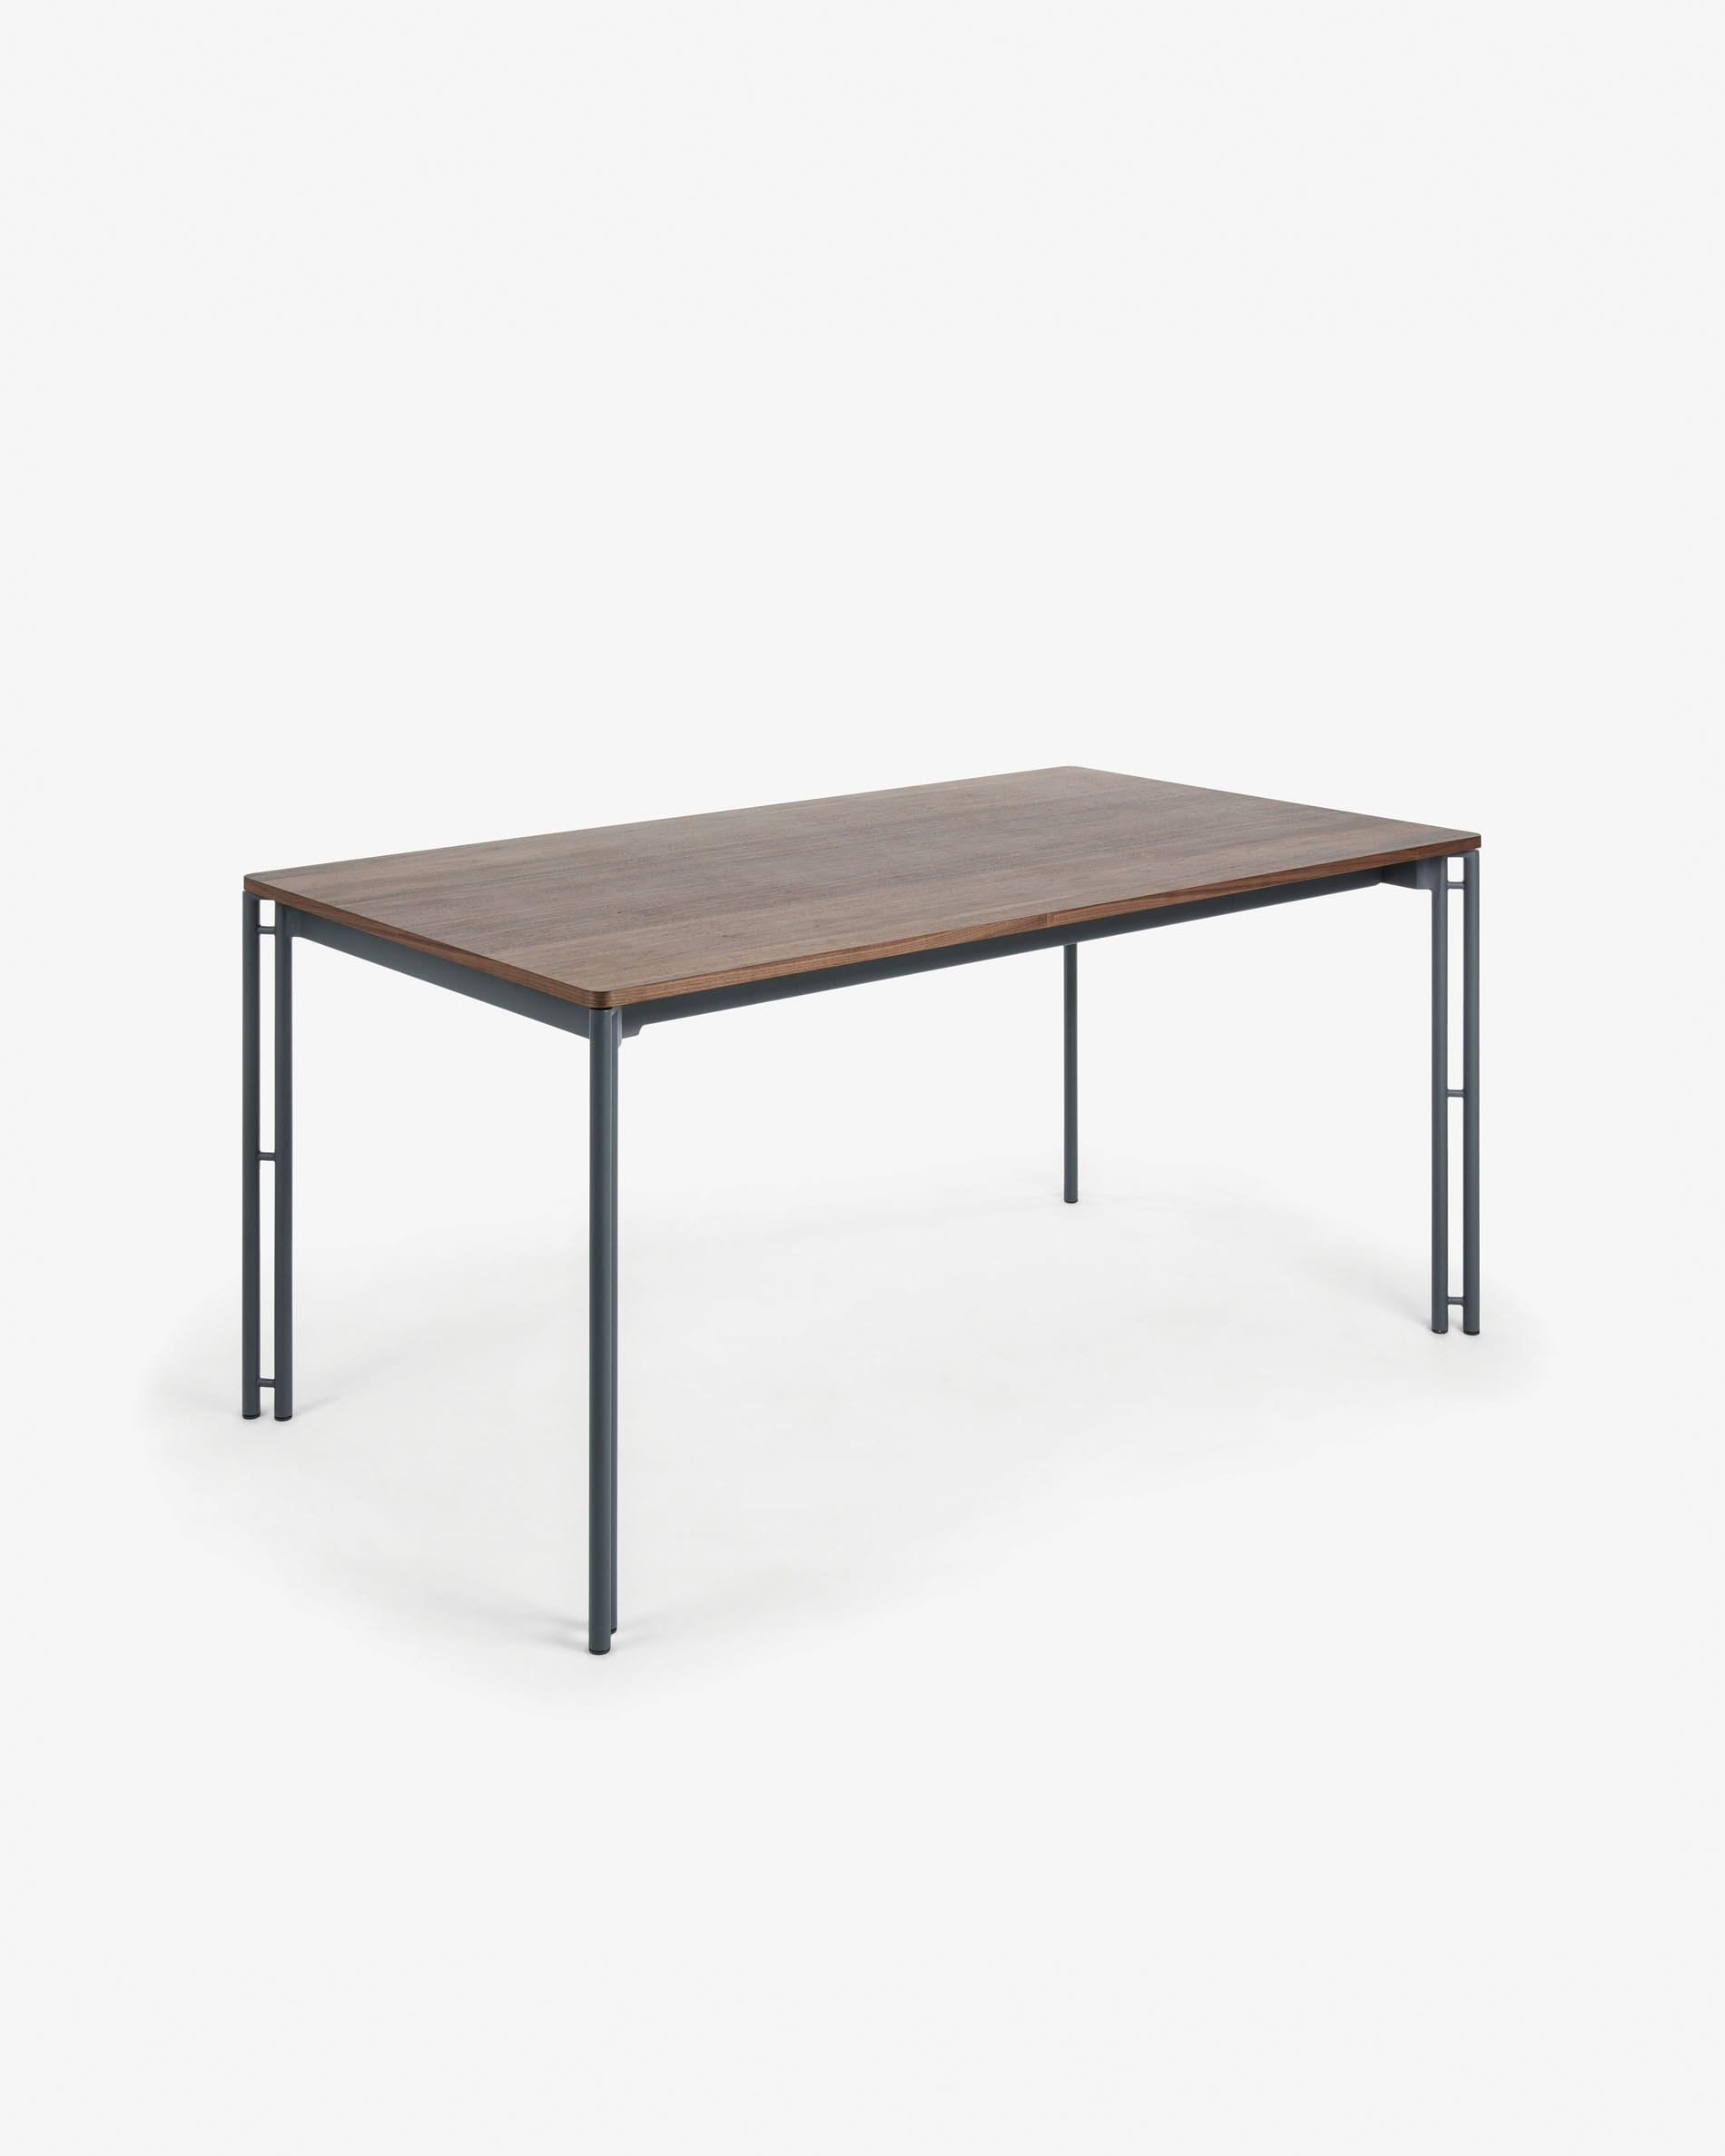 케시아 월넛 확장형 테이블 140(200) x 90cm